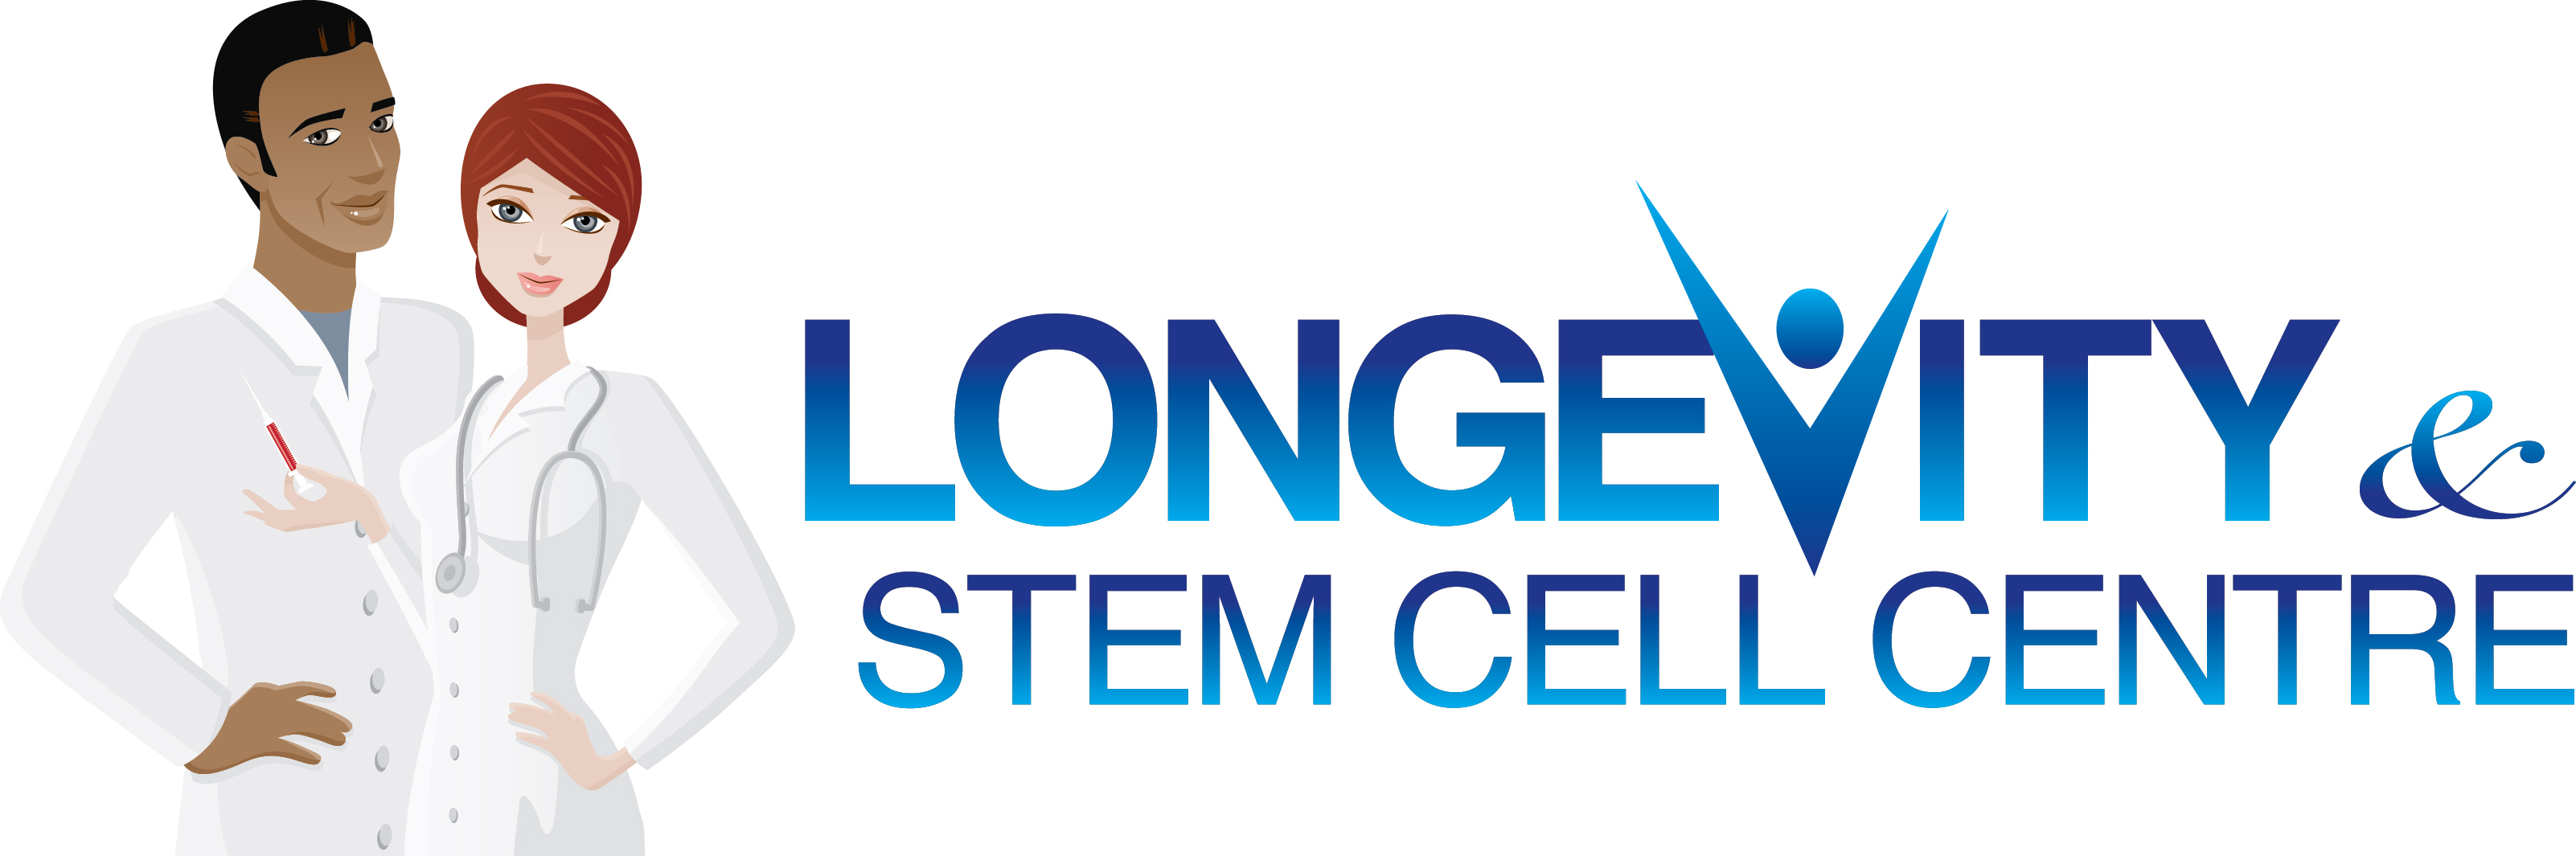 Longevity & Stem Cell Centre of Houston's Logo